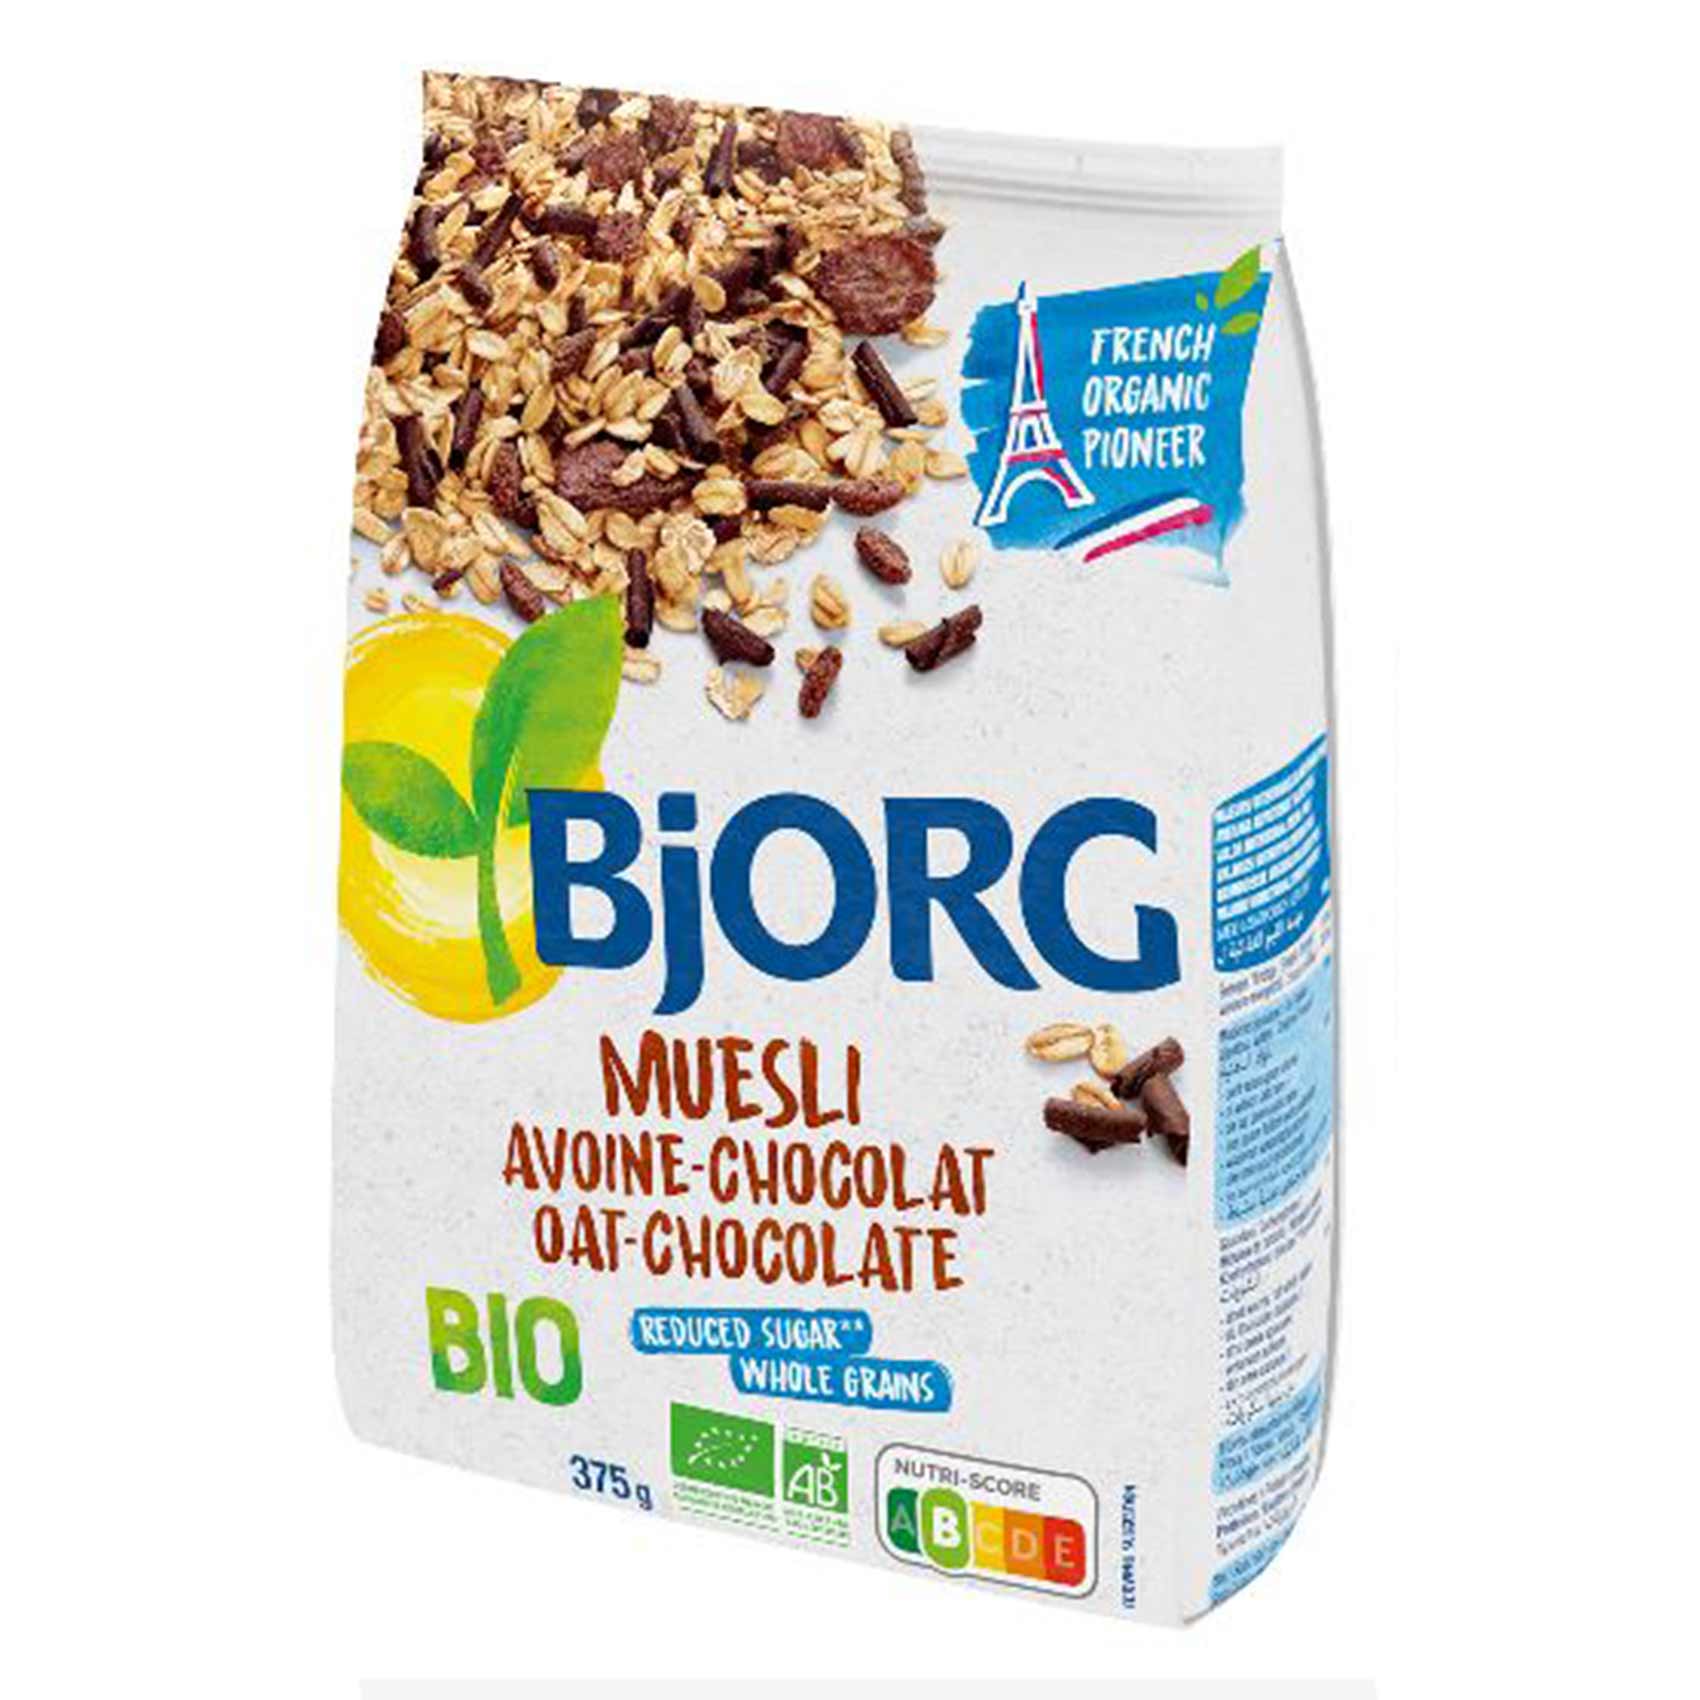 Bjorg Muesli Avoine Chocolat Bio 375GR